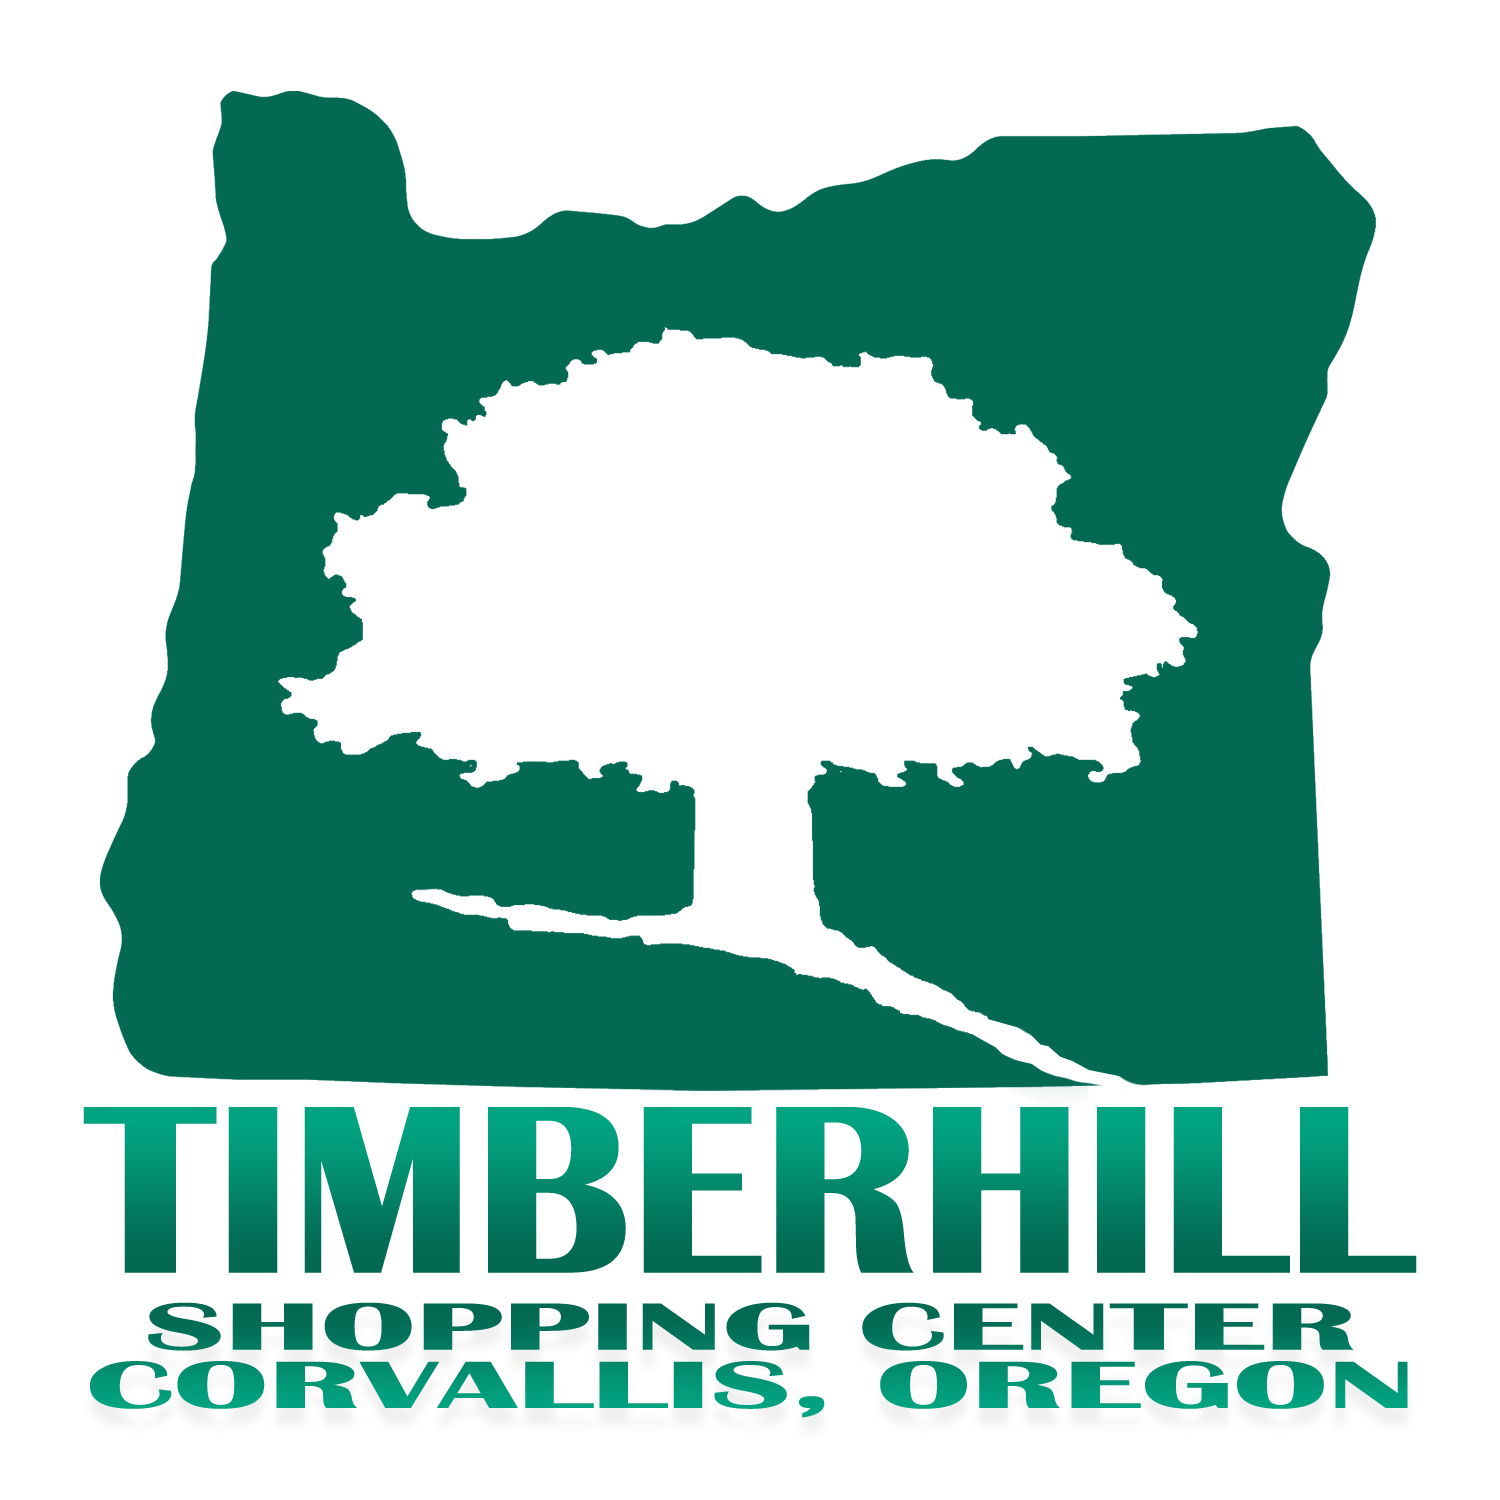 Timberhill Shopping Center